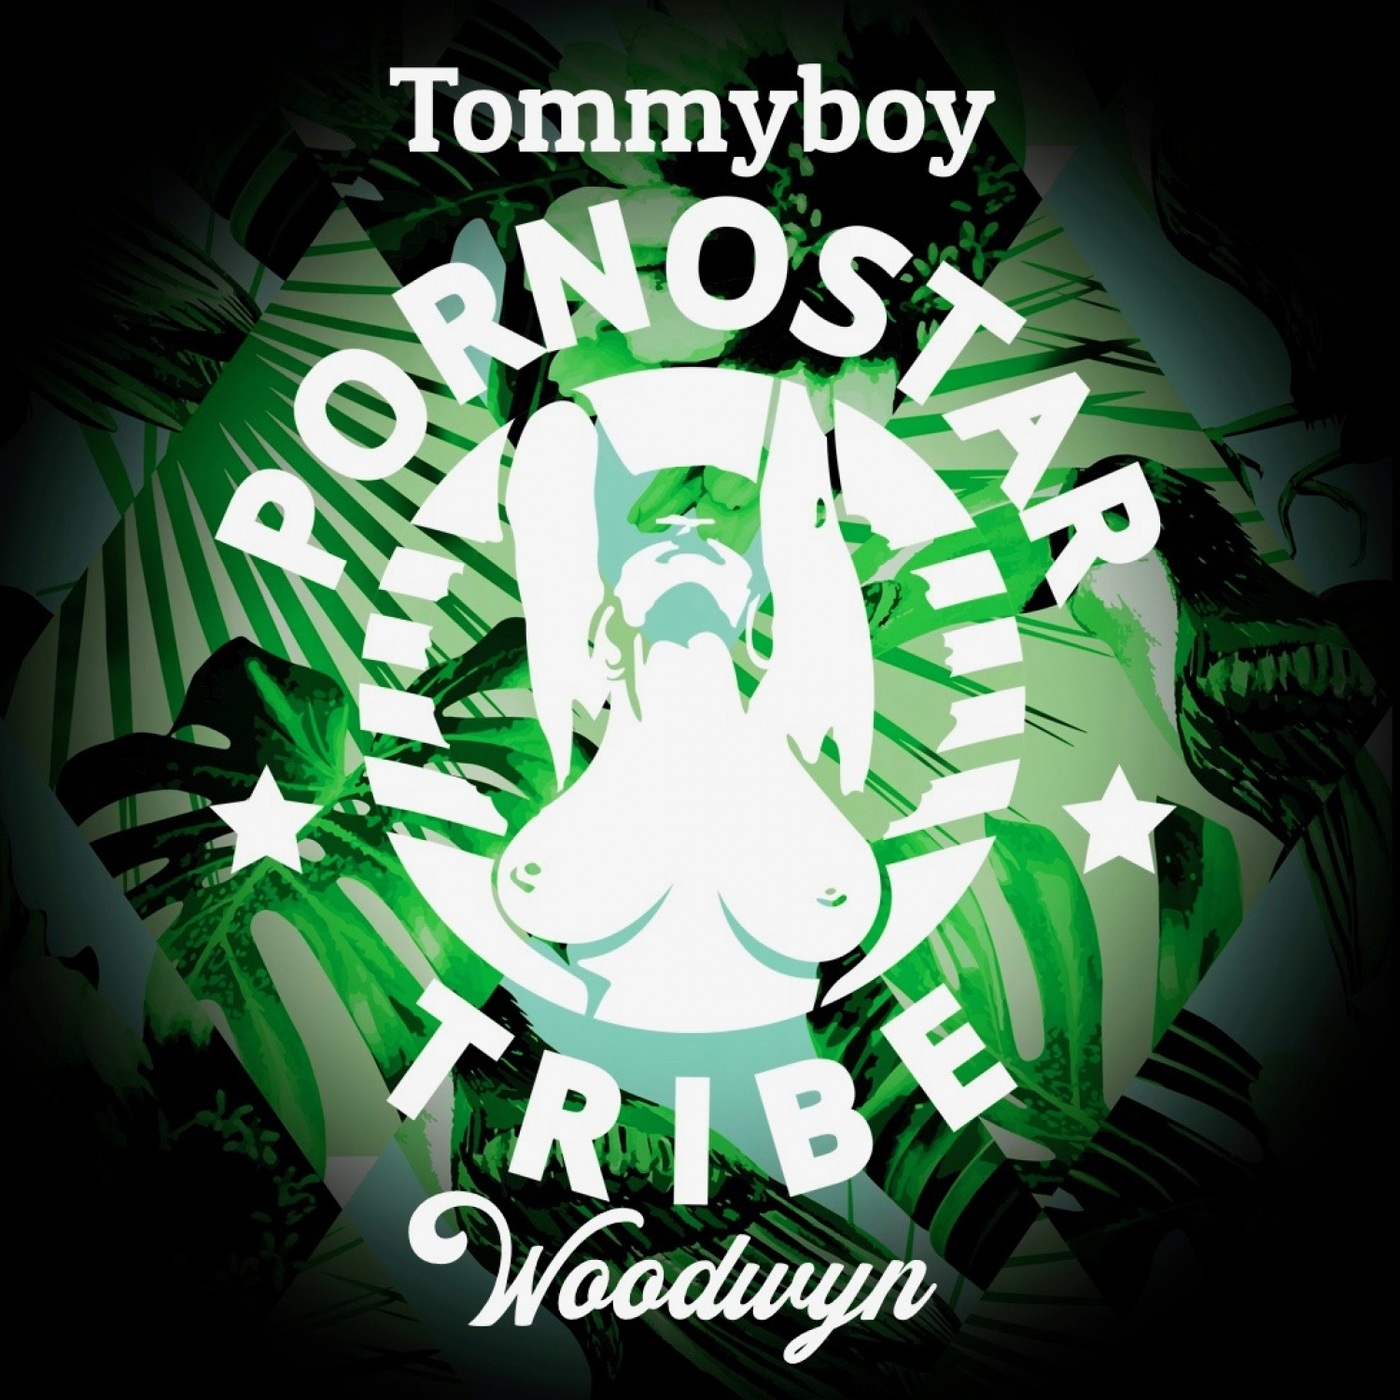 Tommyboy - Woodwyn / PornoStar Records